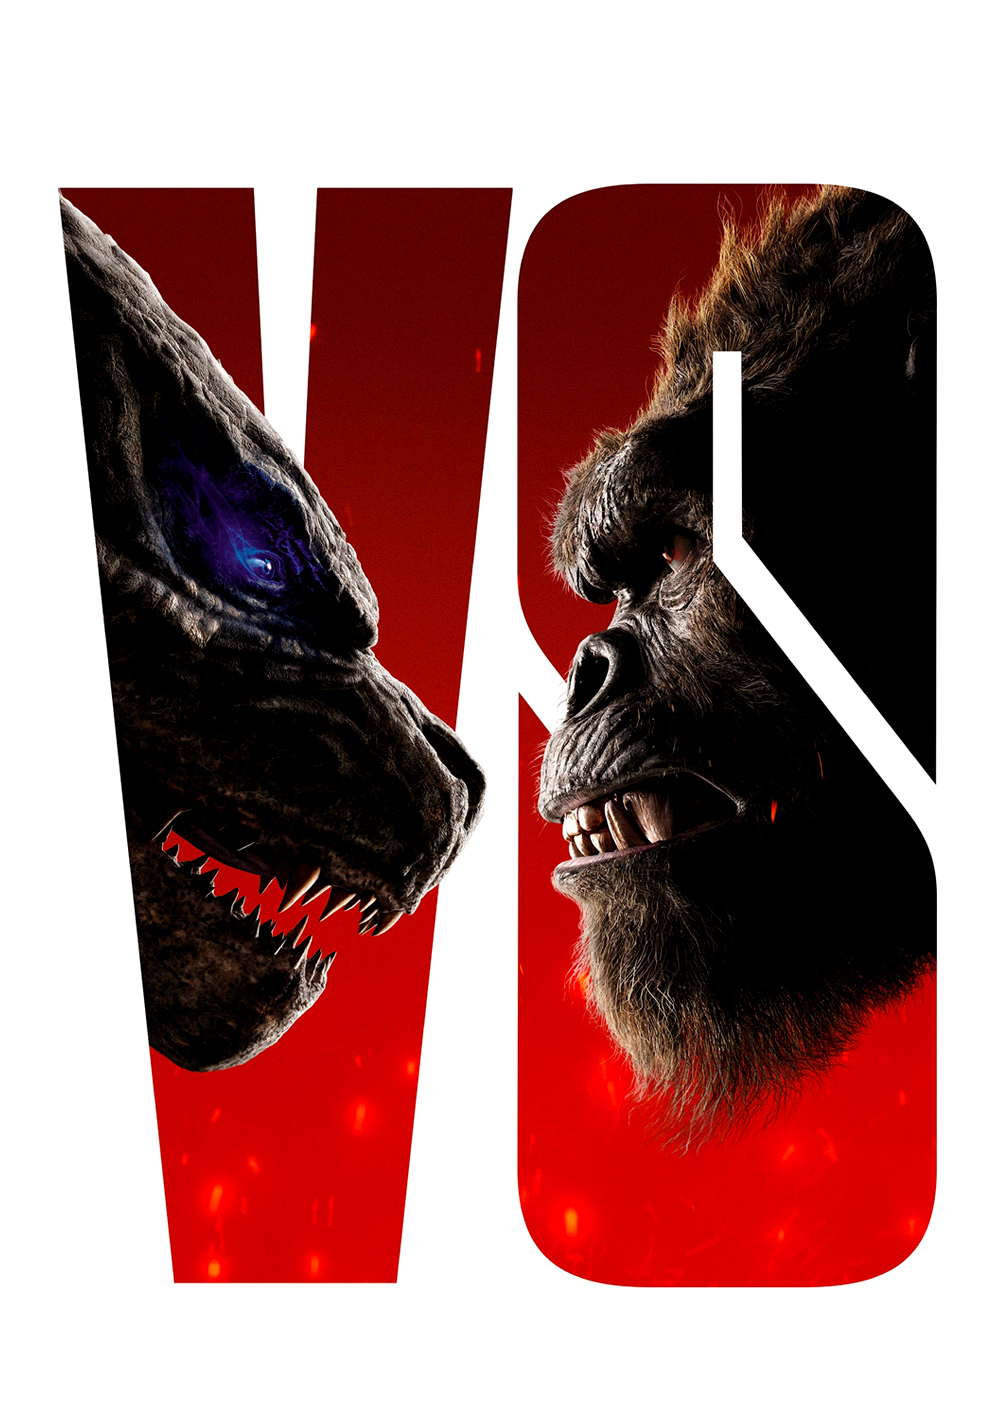 Godzilla vs. Kong screenshot